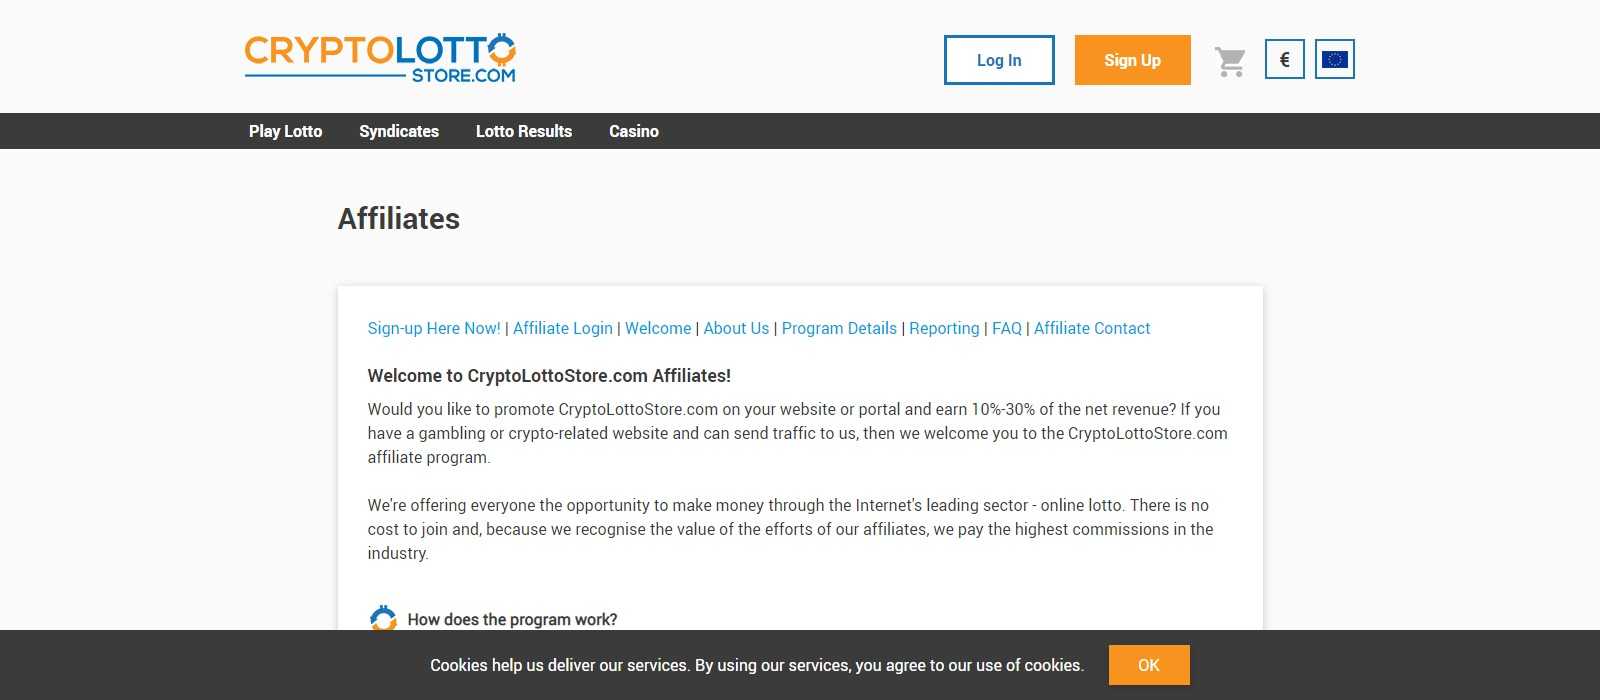 Crypto Lotto Store Affiliates Program Review: 10% - 30% Recurring Revenue Share